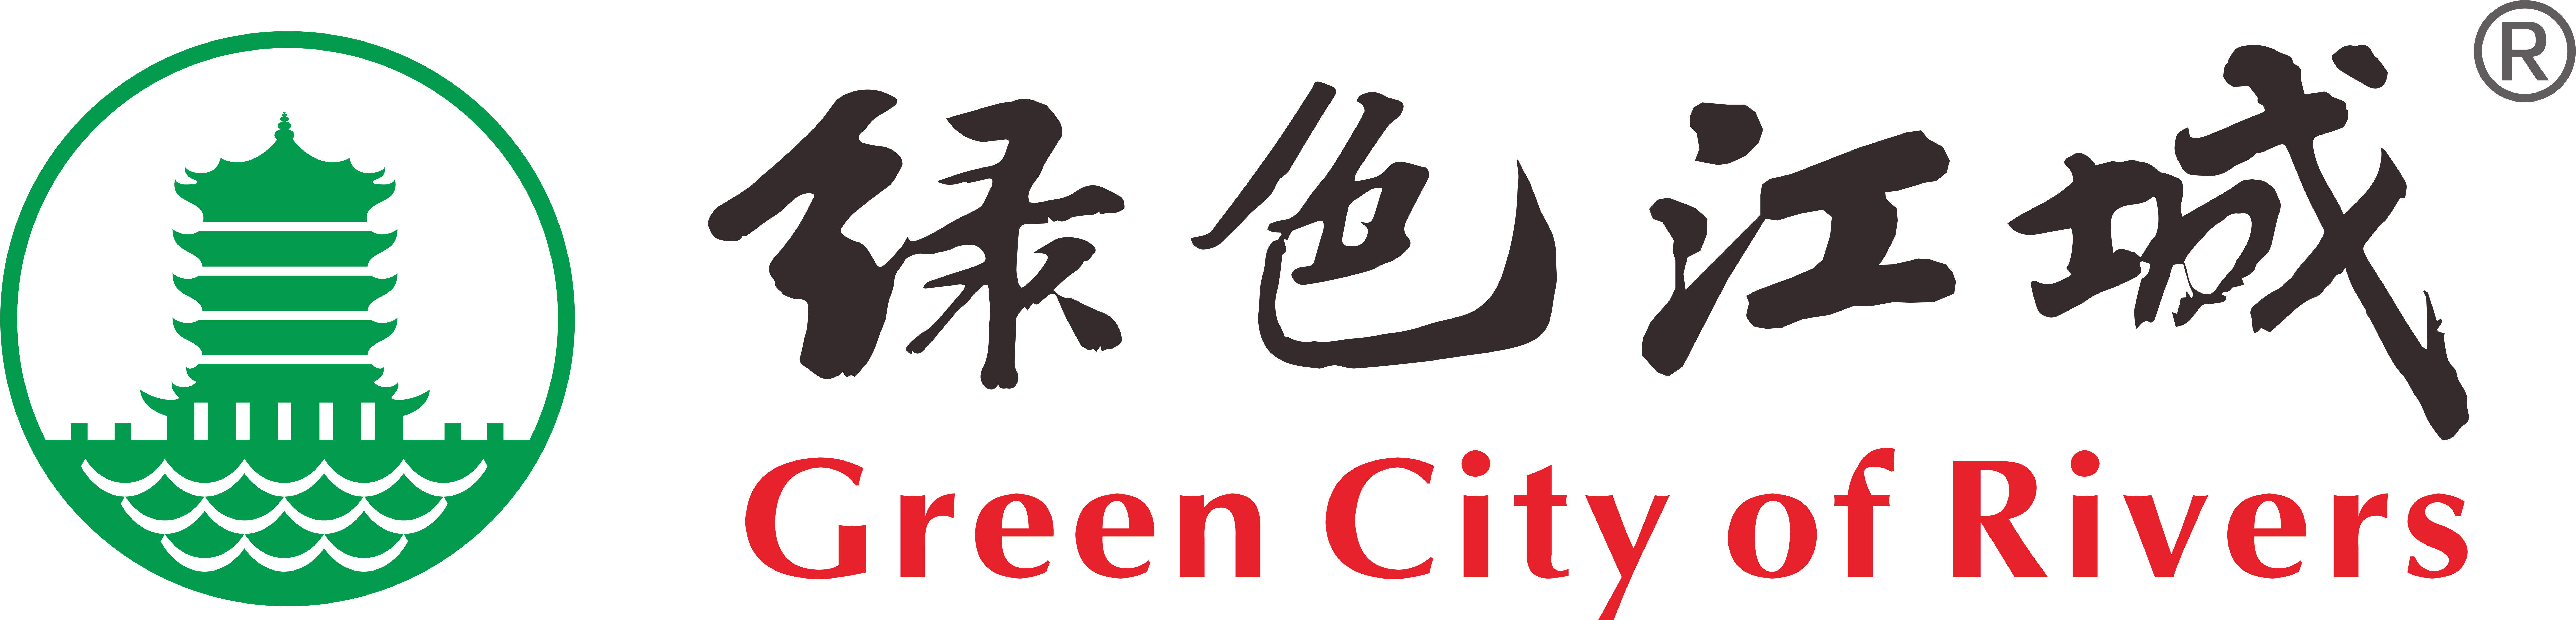 活动宣传片-武汉环保社会组织“绿色江城”